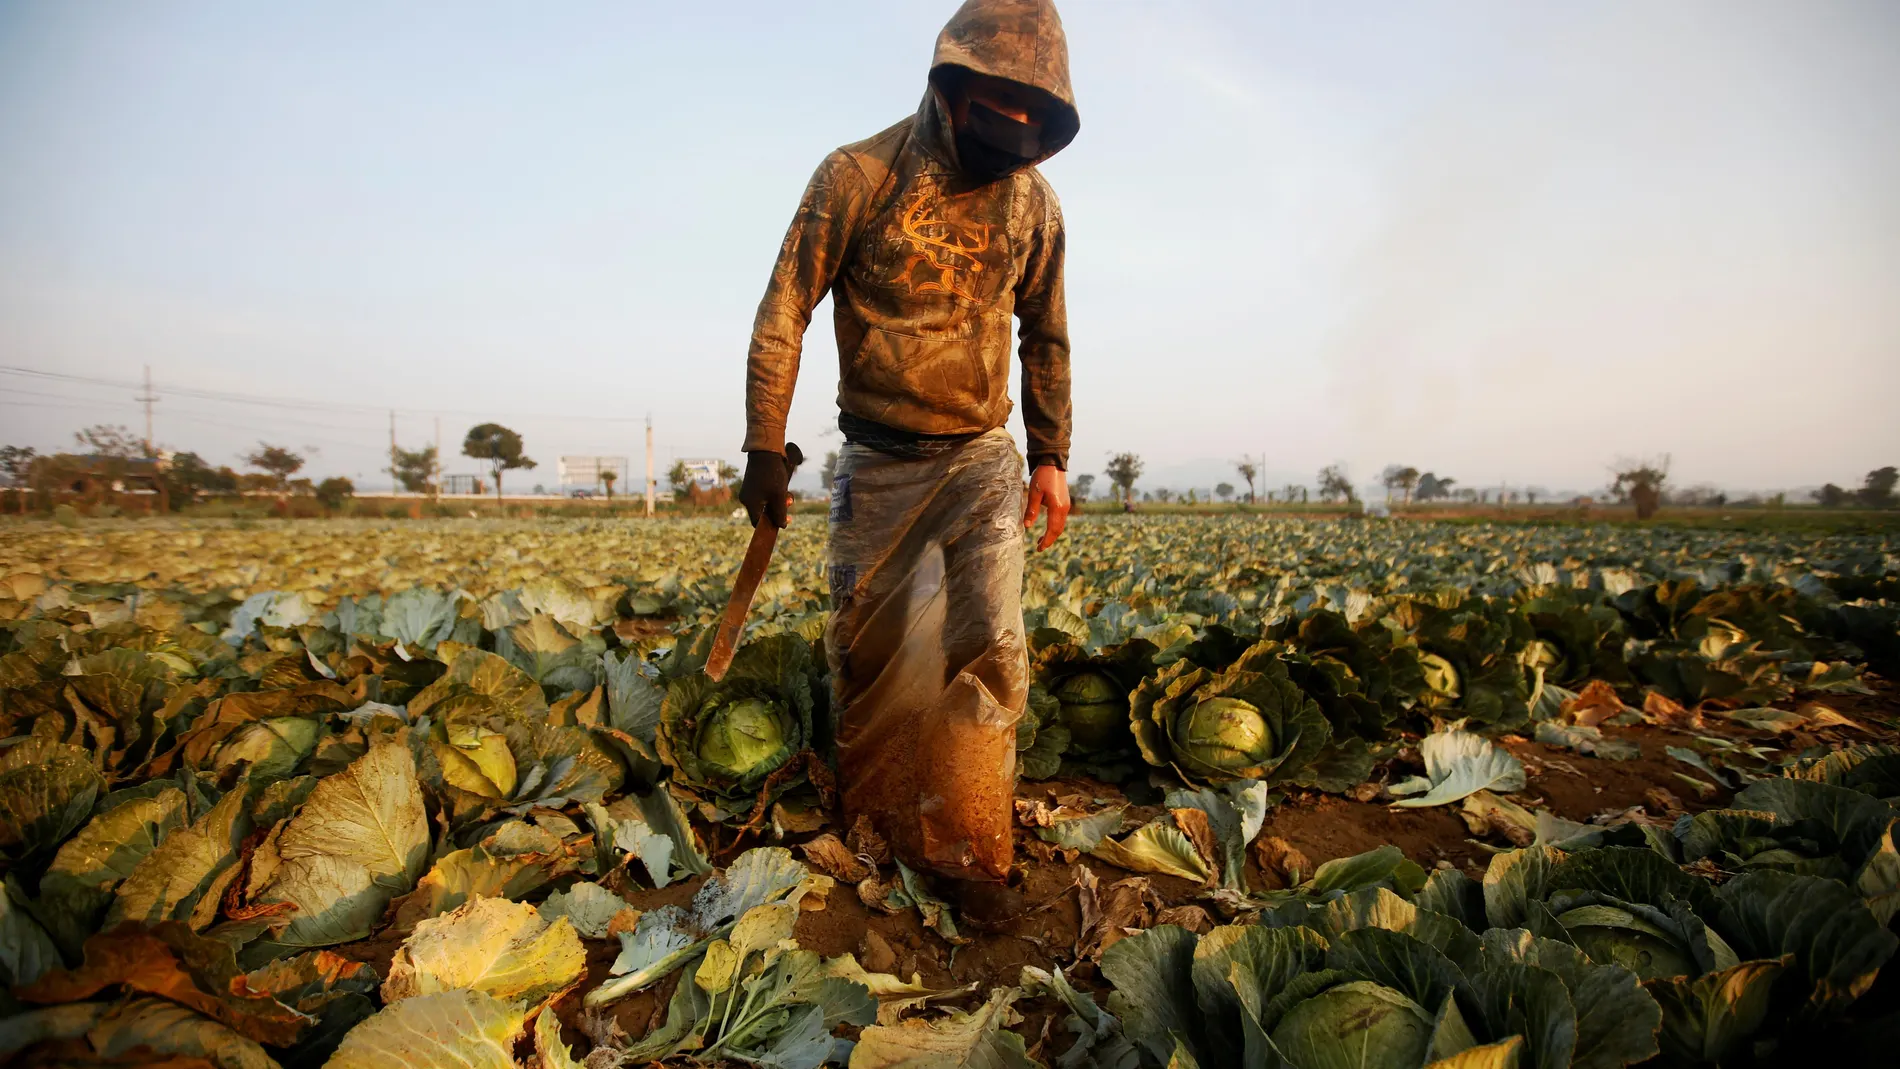 Trabajo "sigue normal" para muchos agricultores en Guatemala pese al COVID-19